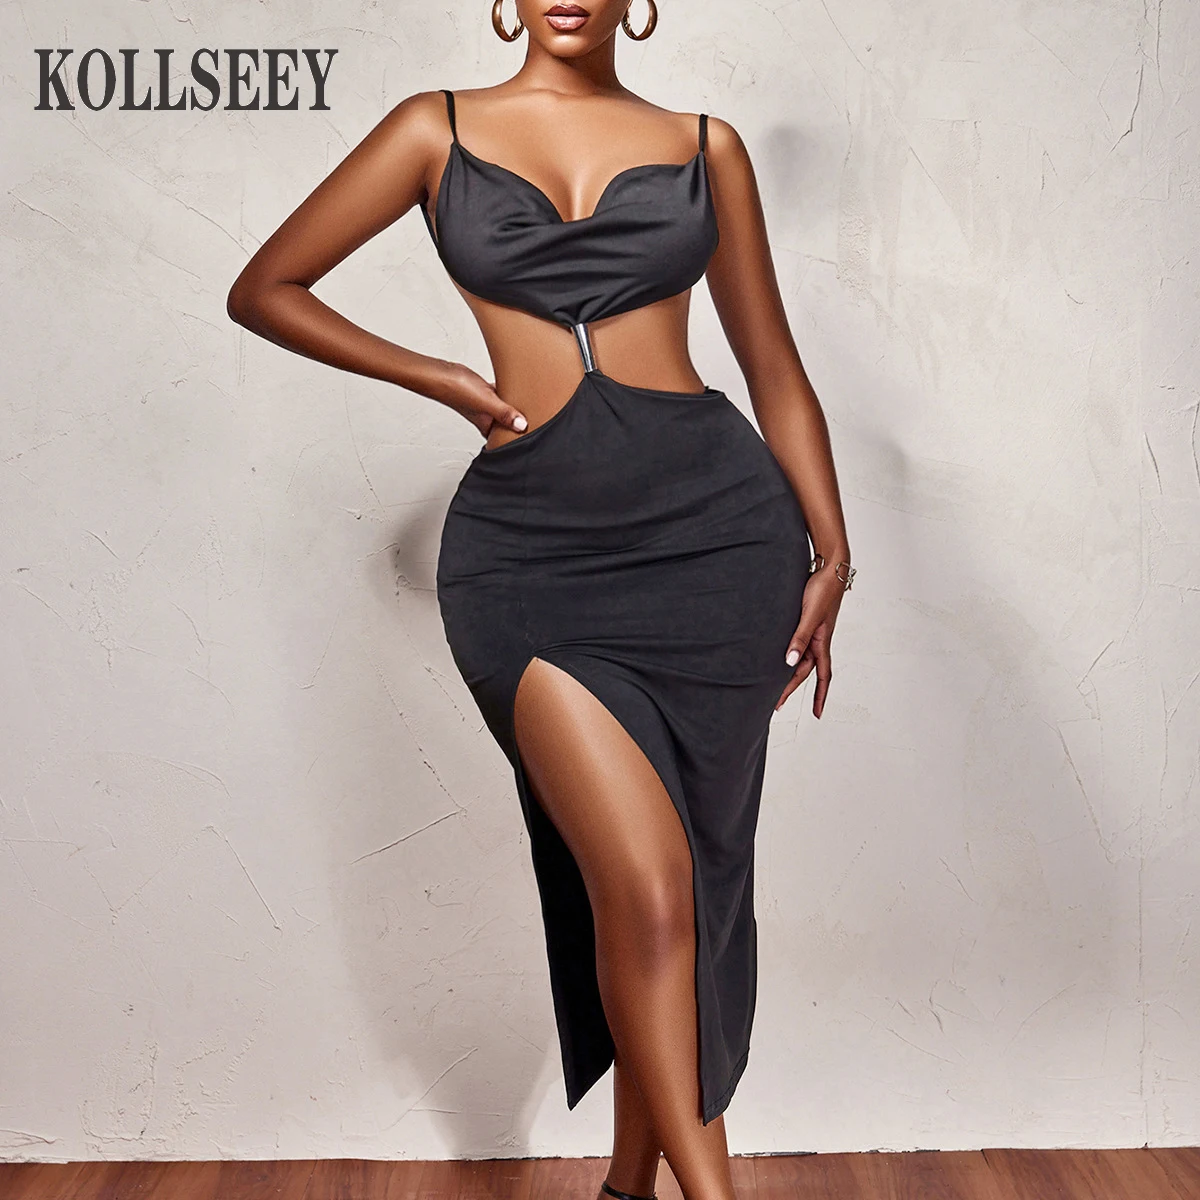 KOLLSEEY Brand Women High Waist Chest Wrap Solid Color Tunic Dress Sexy Long Evening Dress enlarge